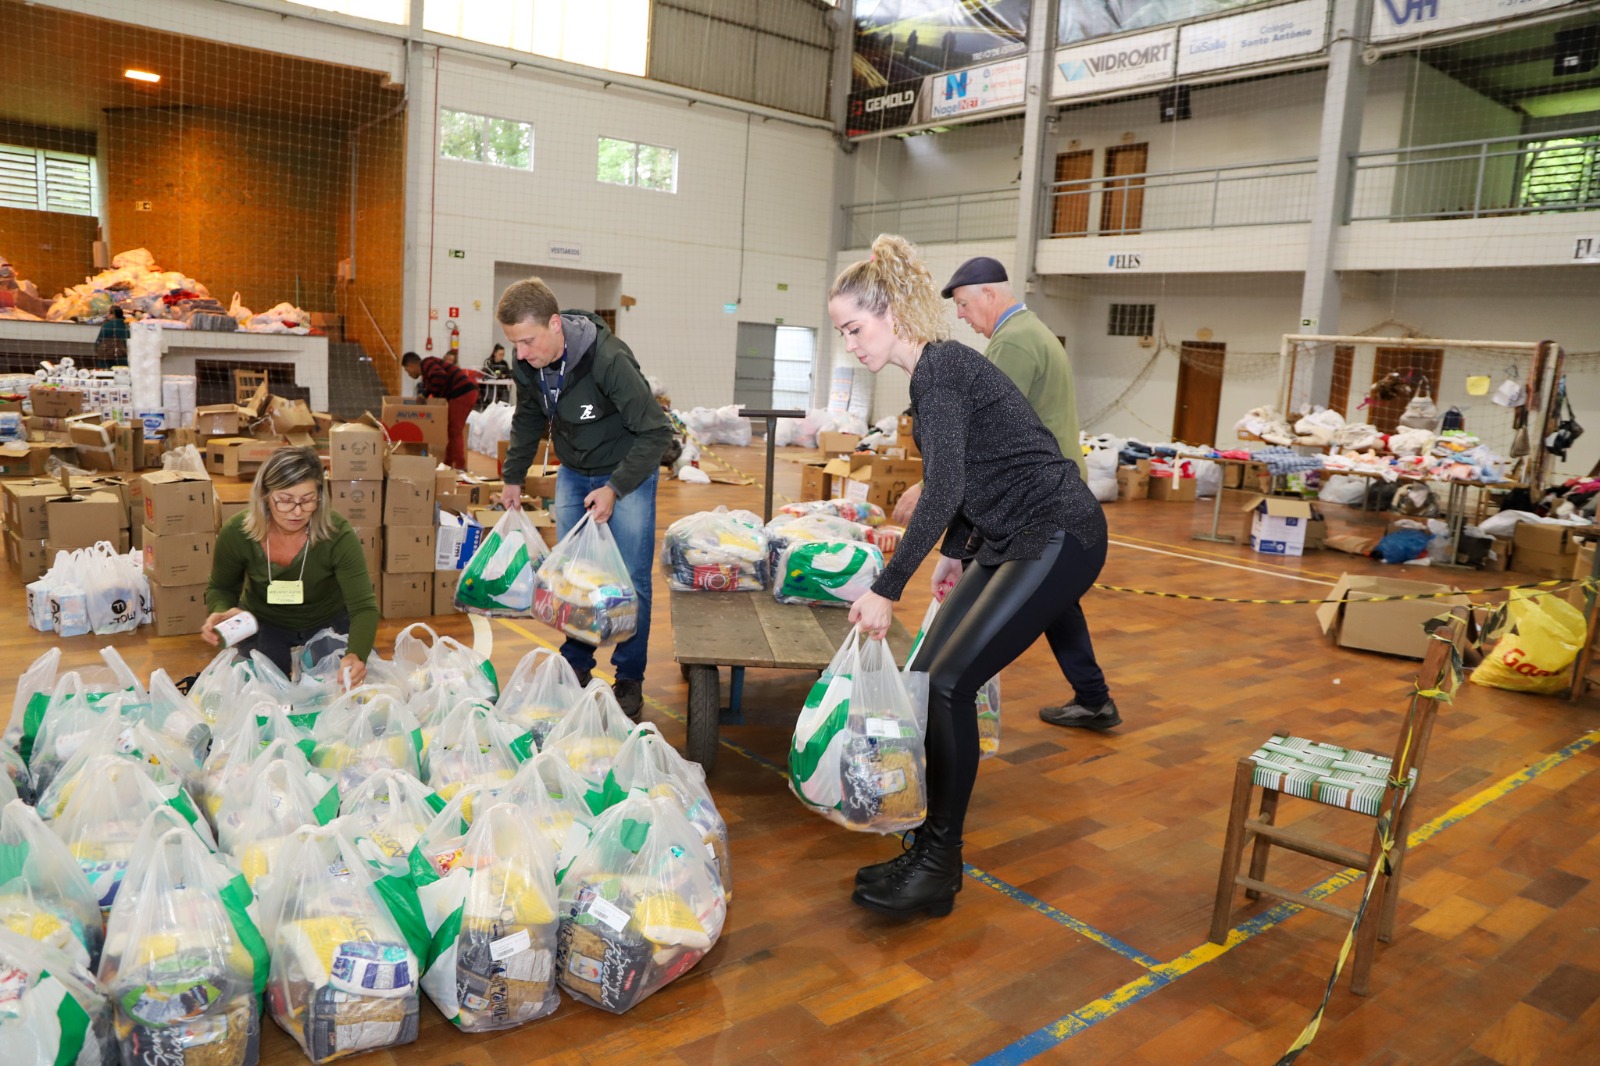 Foto dos voluntários separando as sacolas com os produtos doados